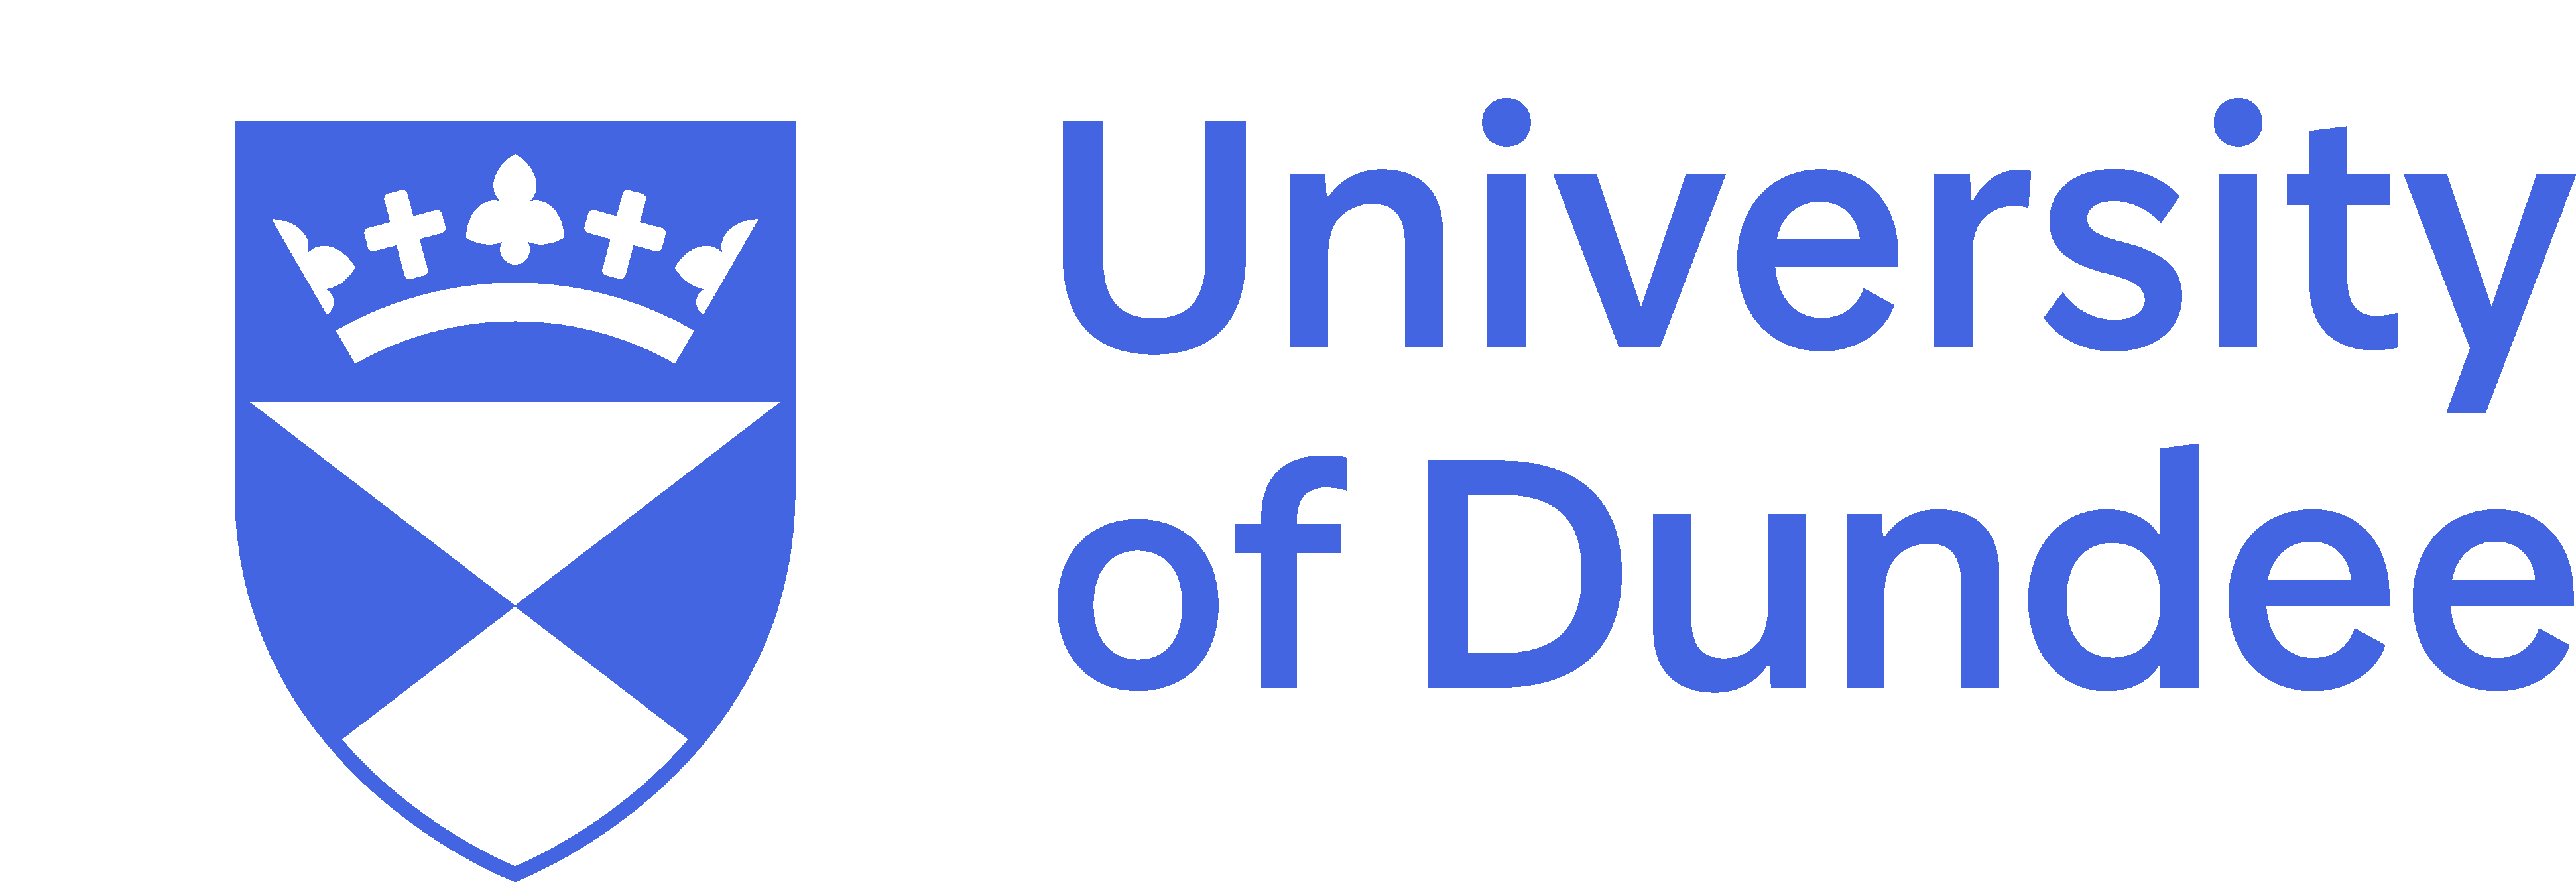 Dundee University logo